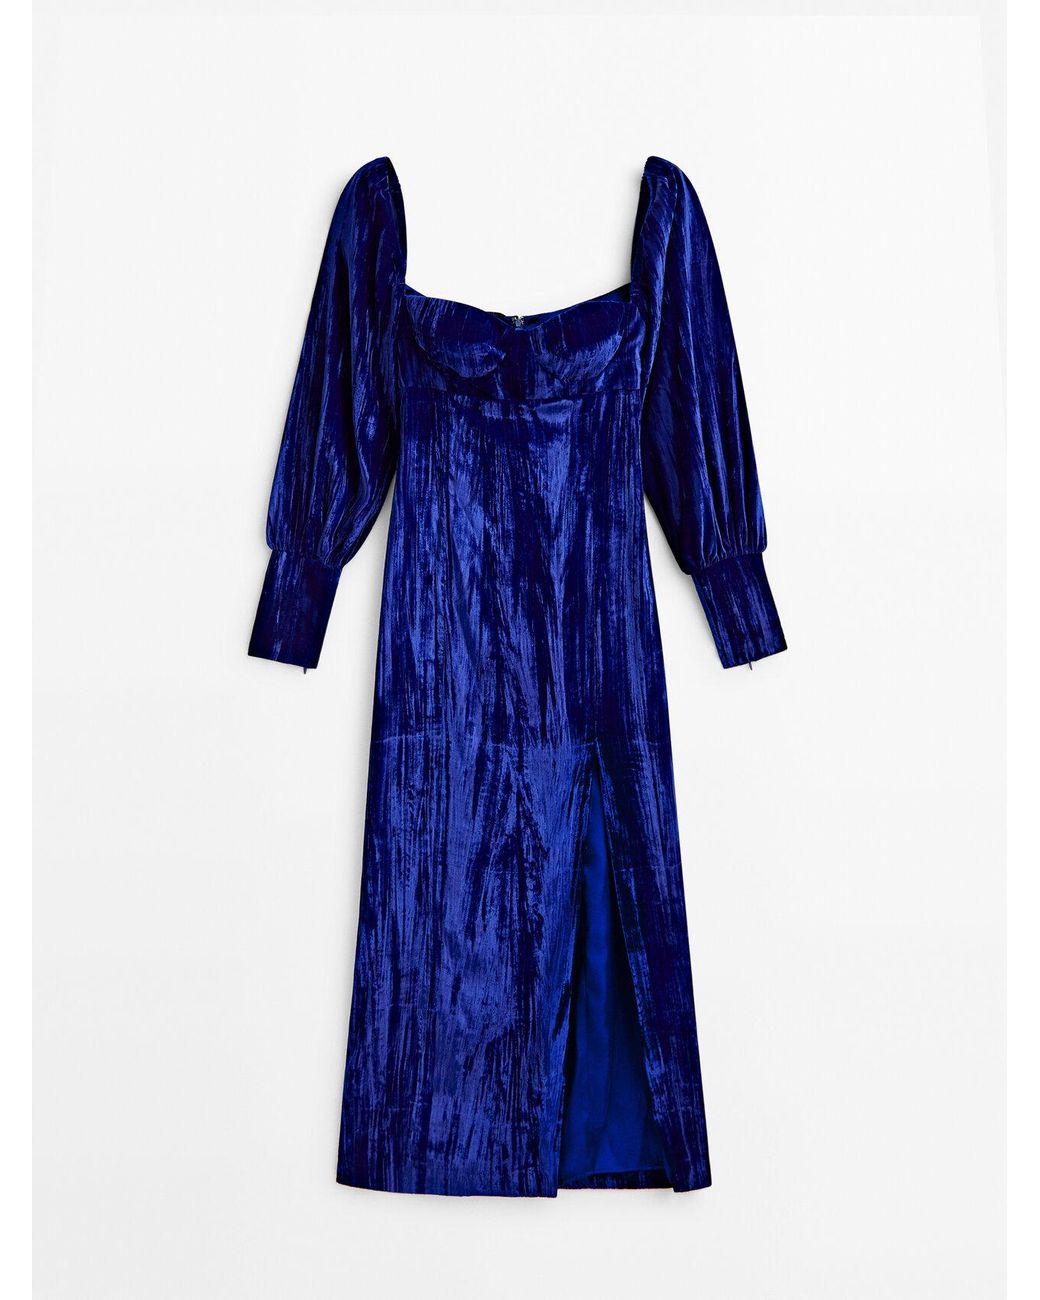 MASSIMO DUTTI Pleated Velvet Dress - Studio in Blue | Lyst